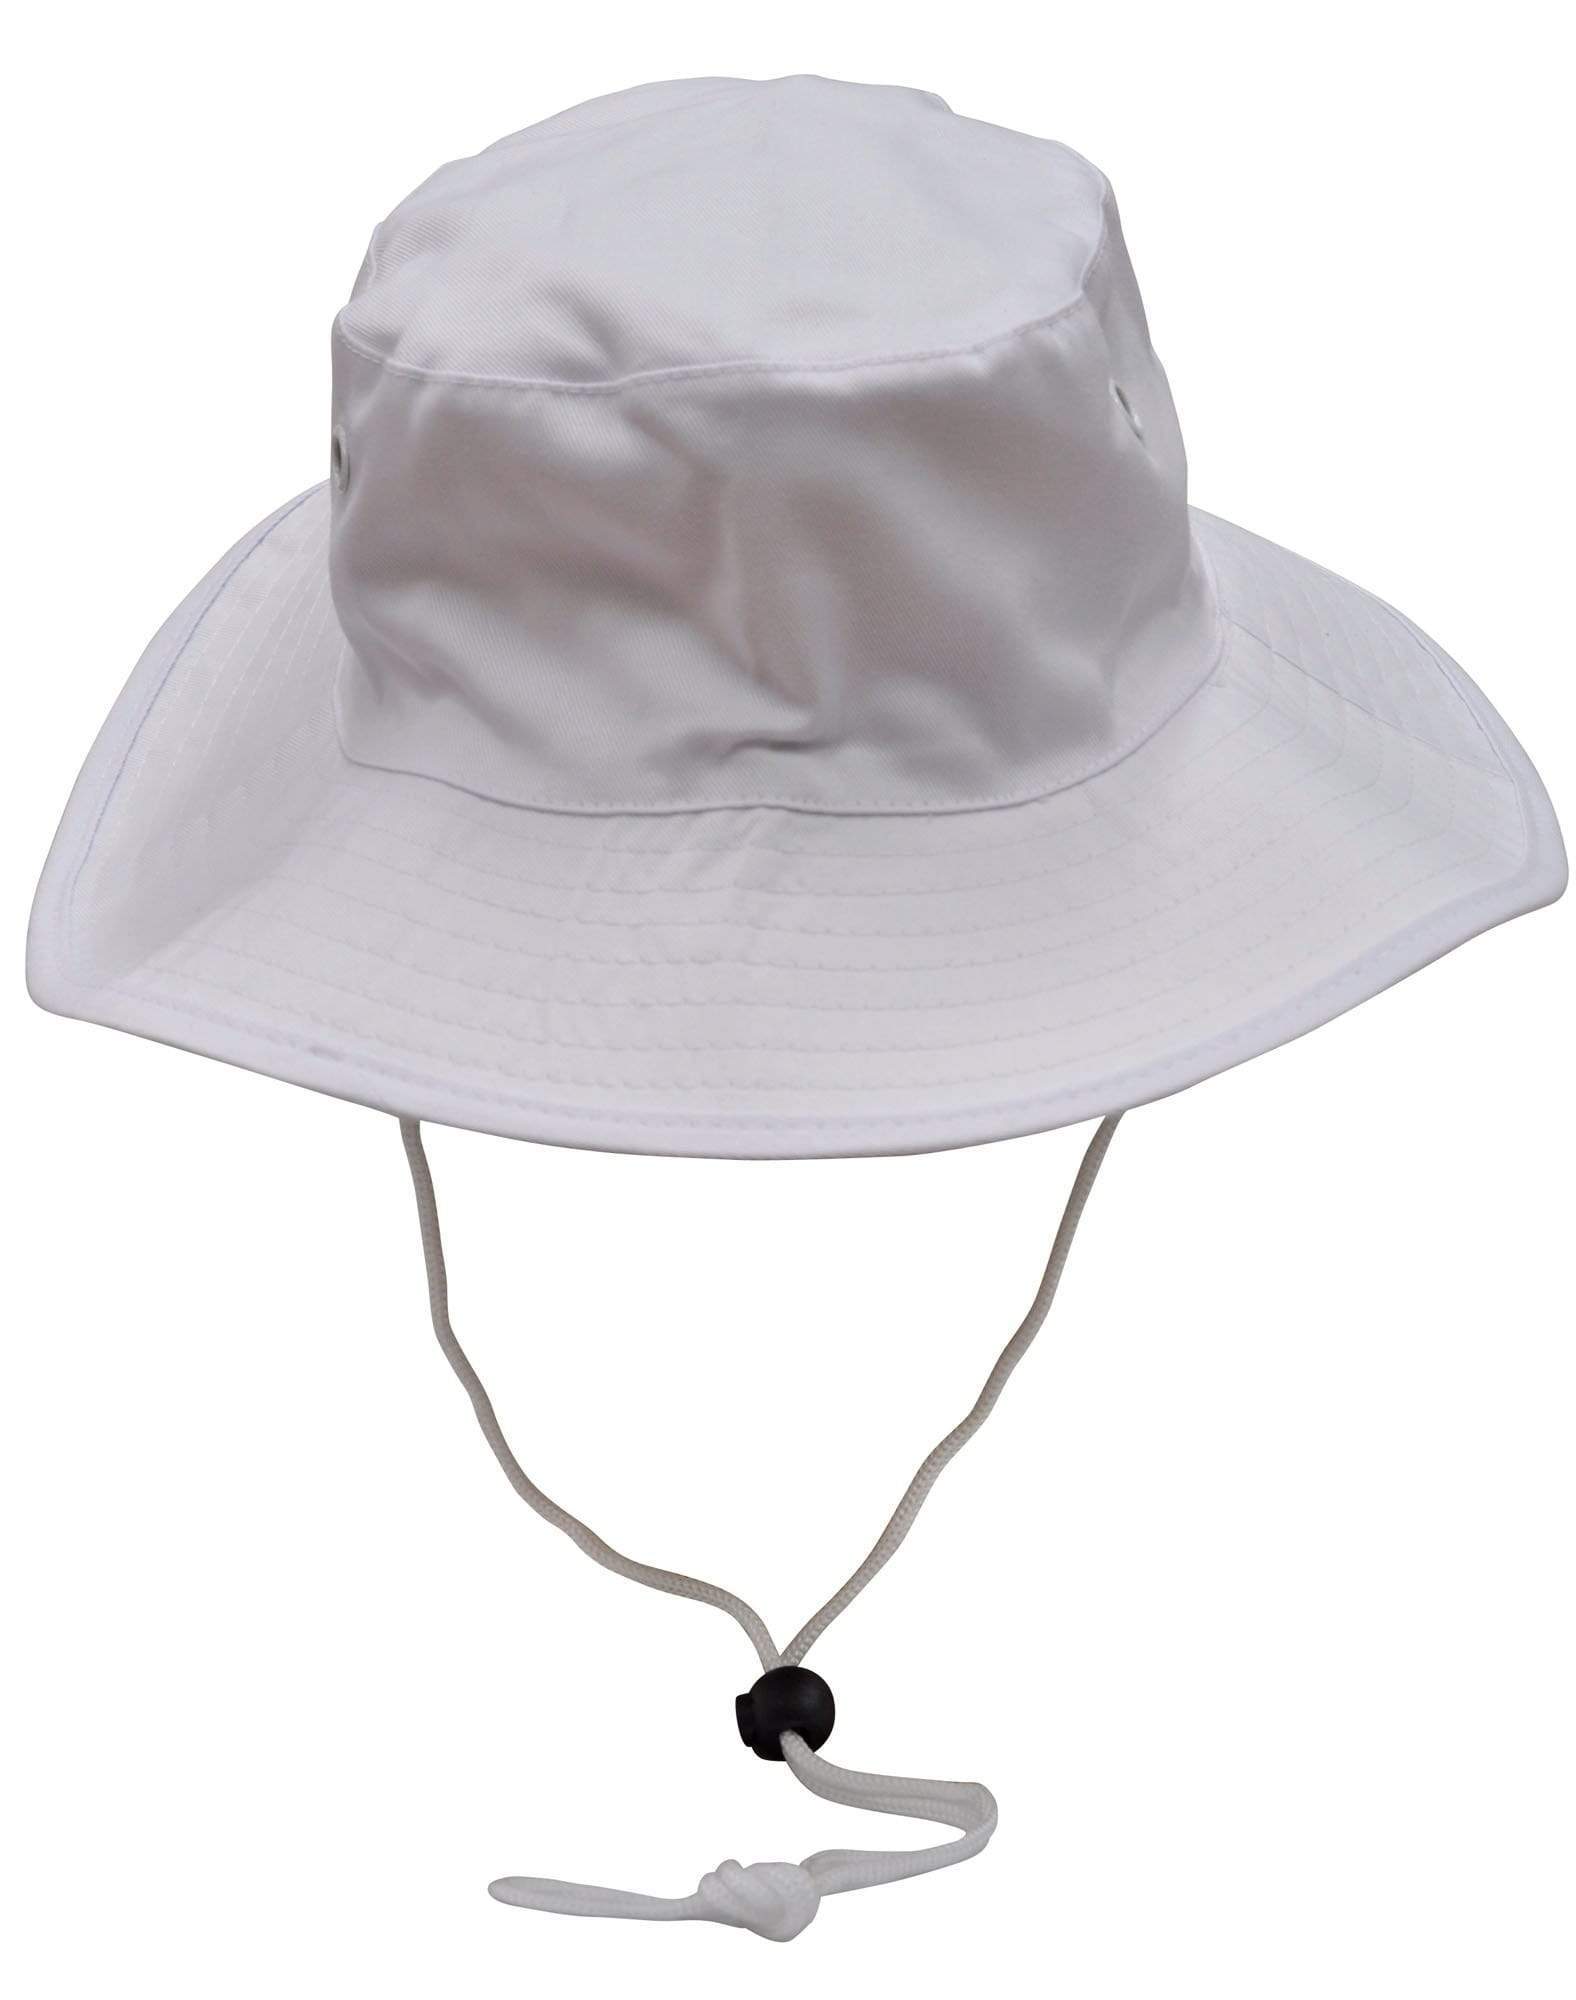 Winning Spirit Active Wear White / S Surf Hat With Break-away Strap H1035